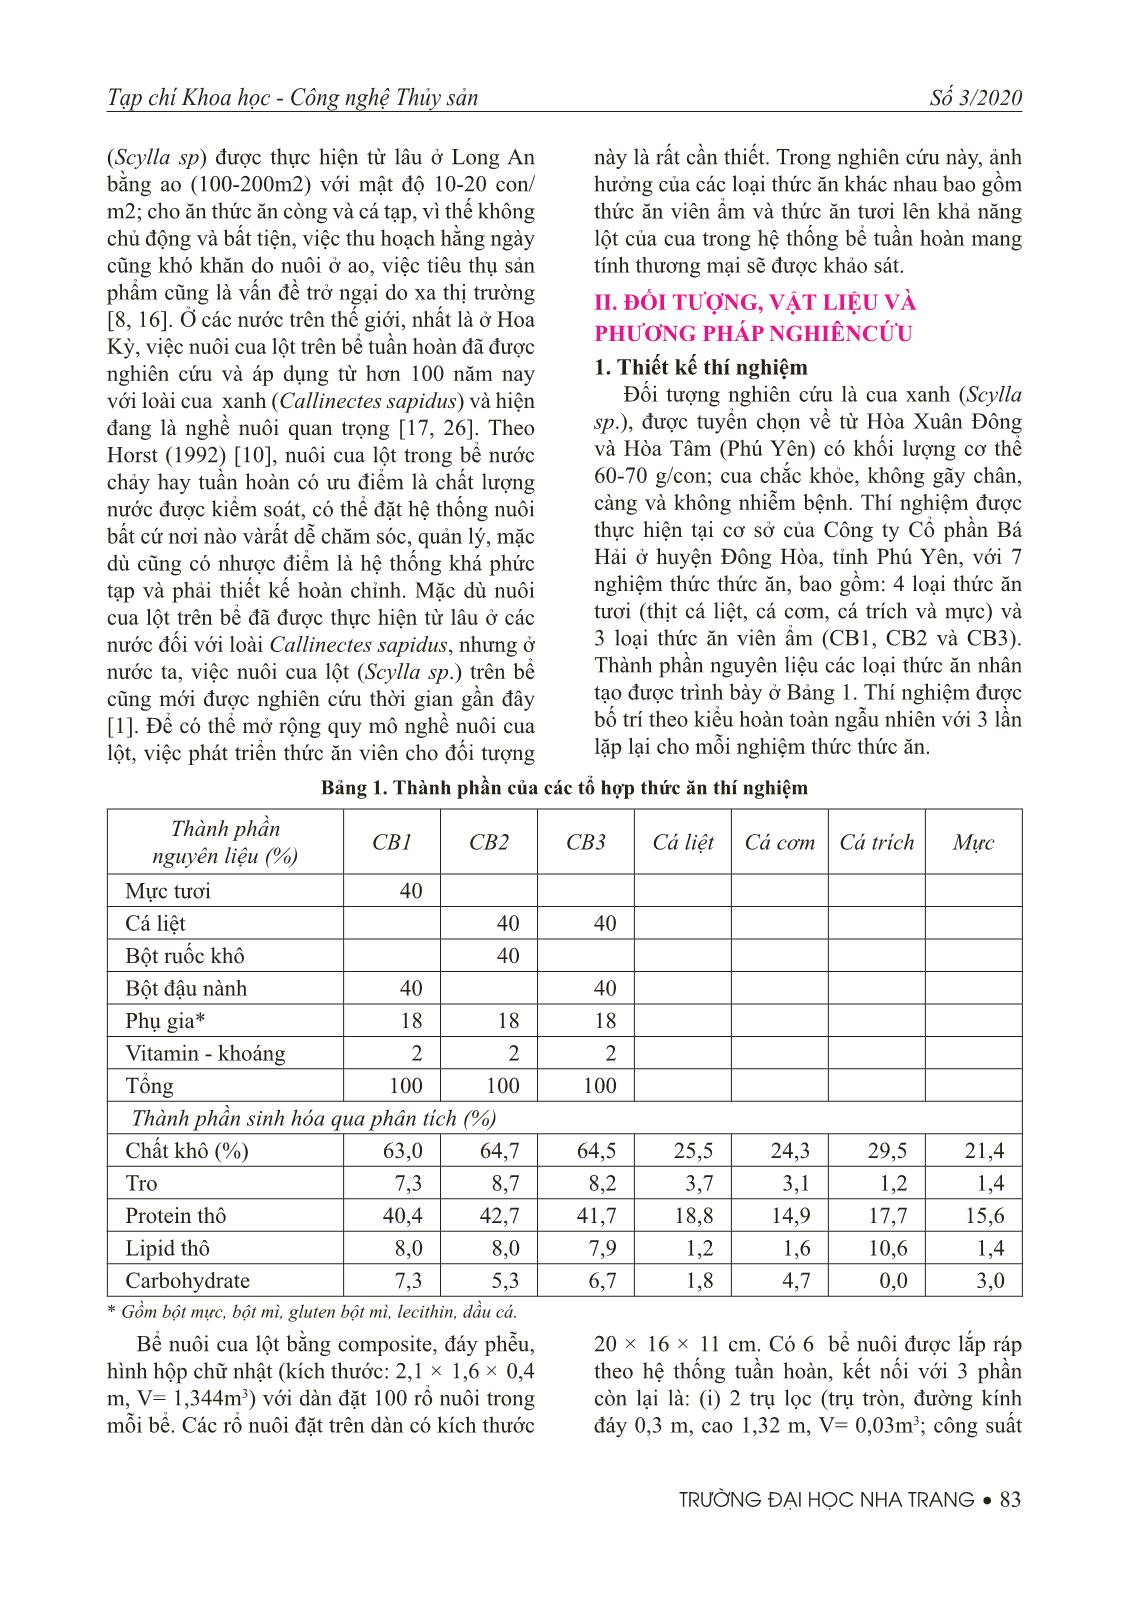 Ảnh hưởng của thức ăn khác nhau đến tỷ lệ sống và tỷ lệ lột vỏ của cua xanh (Scyllasp.) nuôi trong bể tuần hoàn trang 2